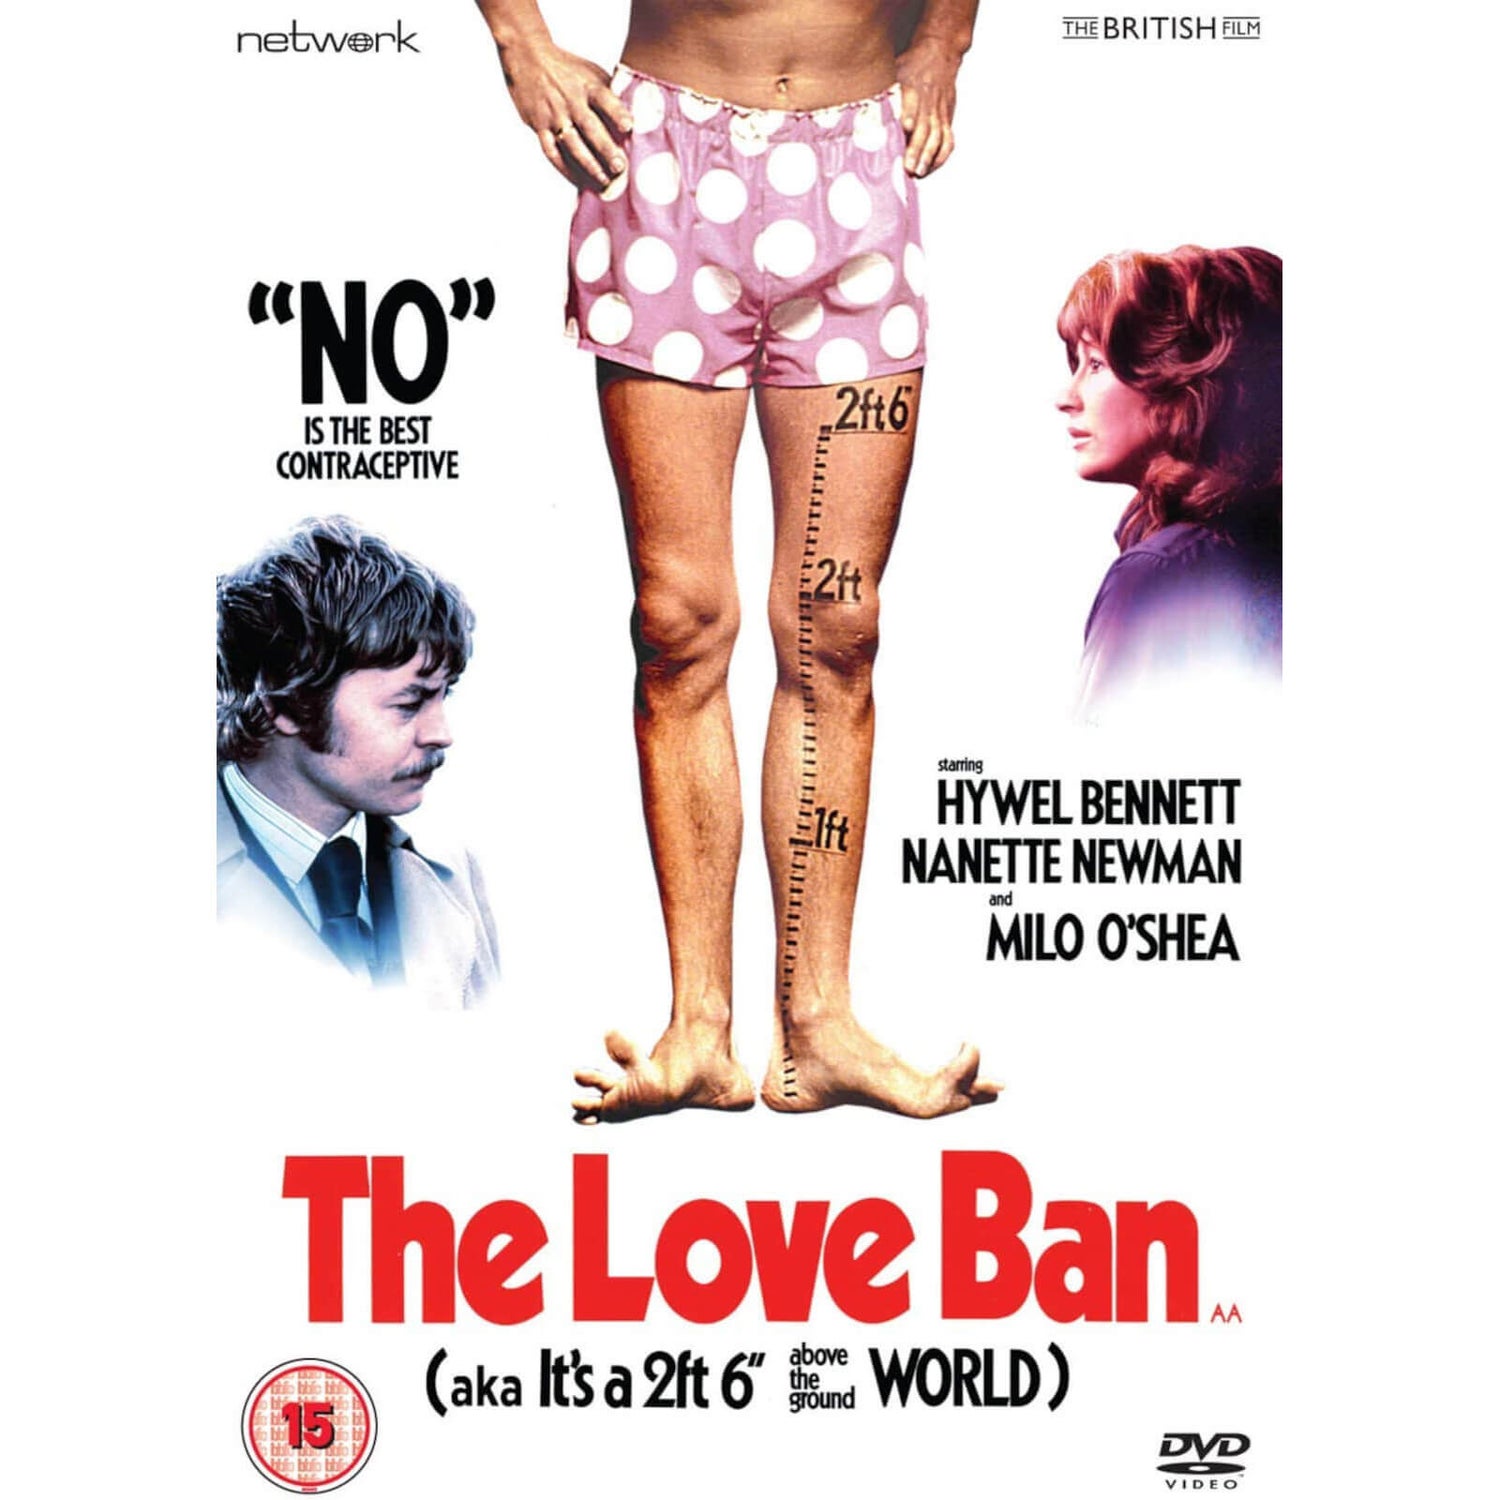 The Love Ban